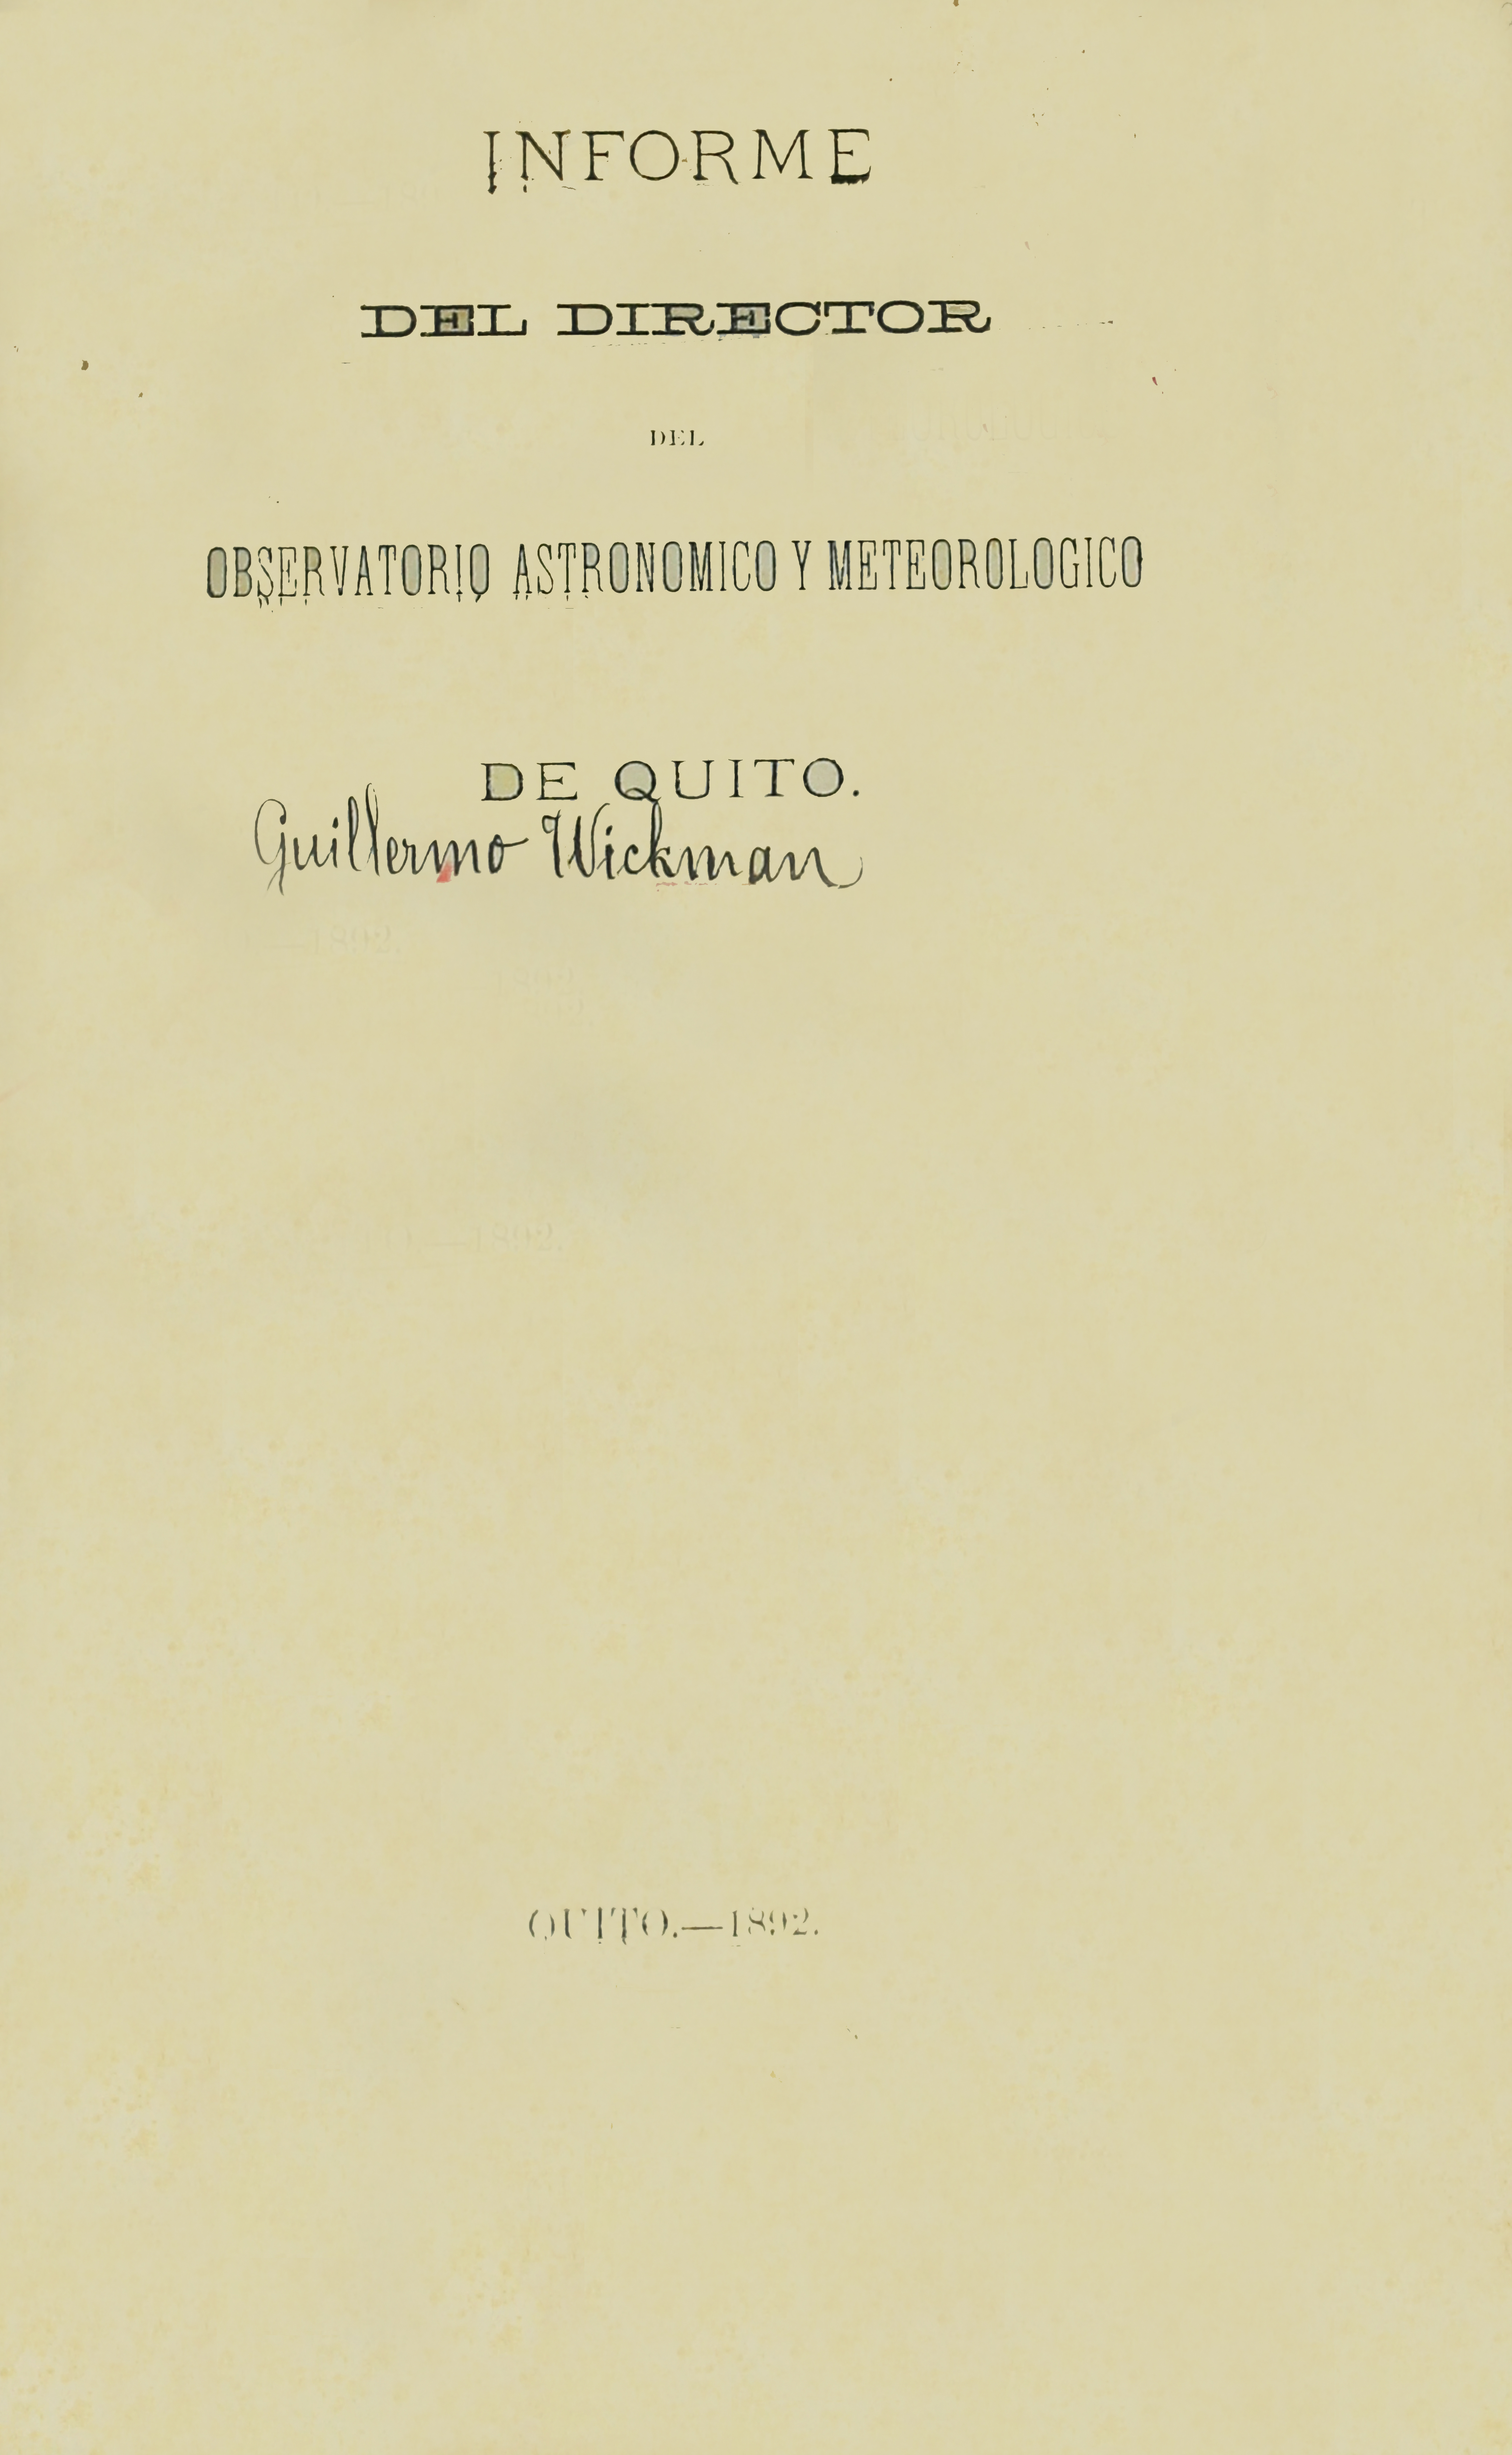 Informe del Director del Observatorio Astronómico y Meteorológico de Quito